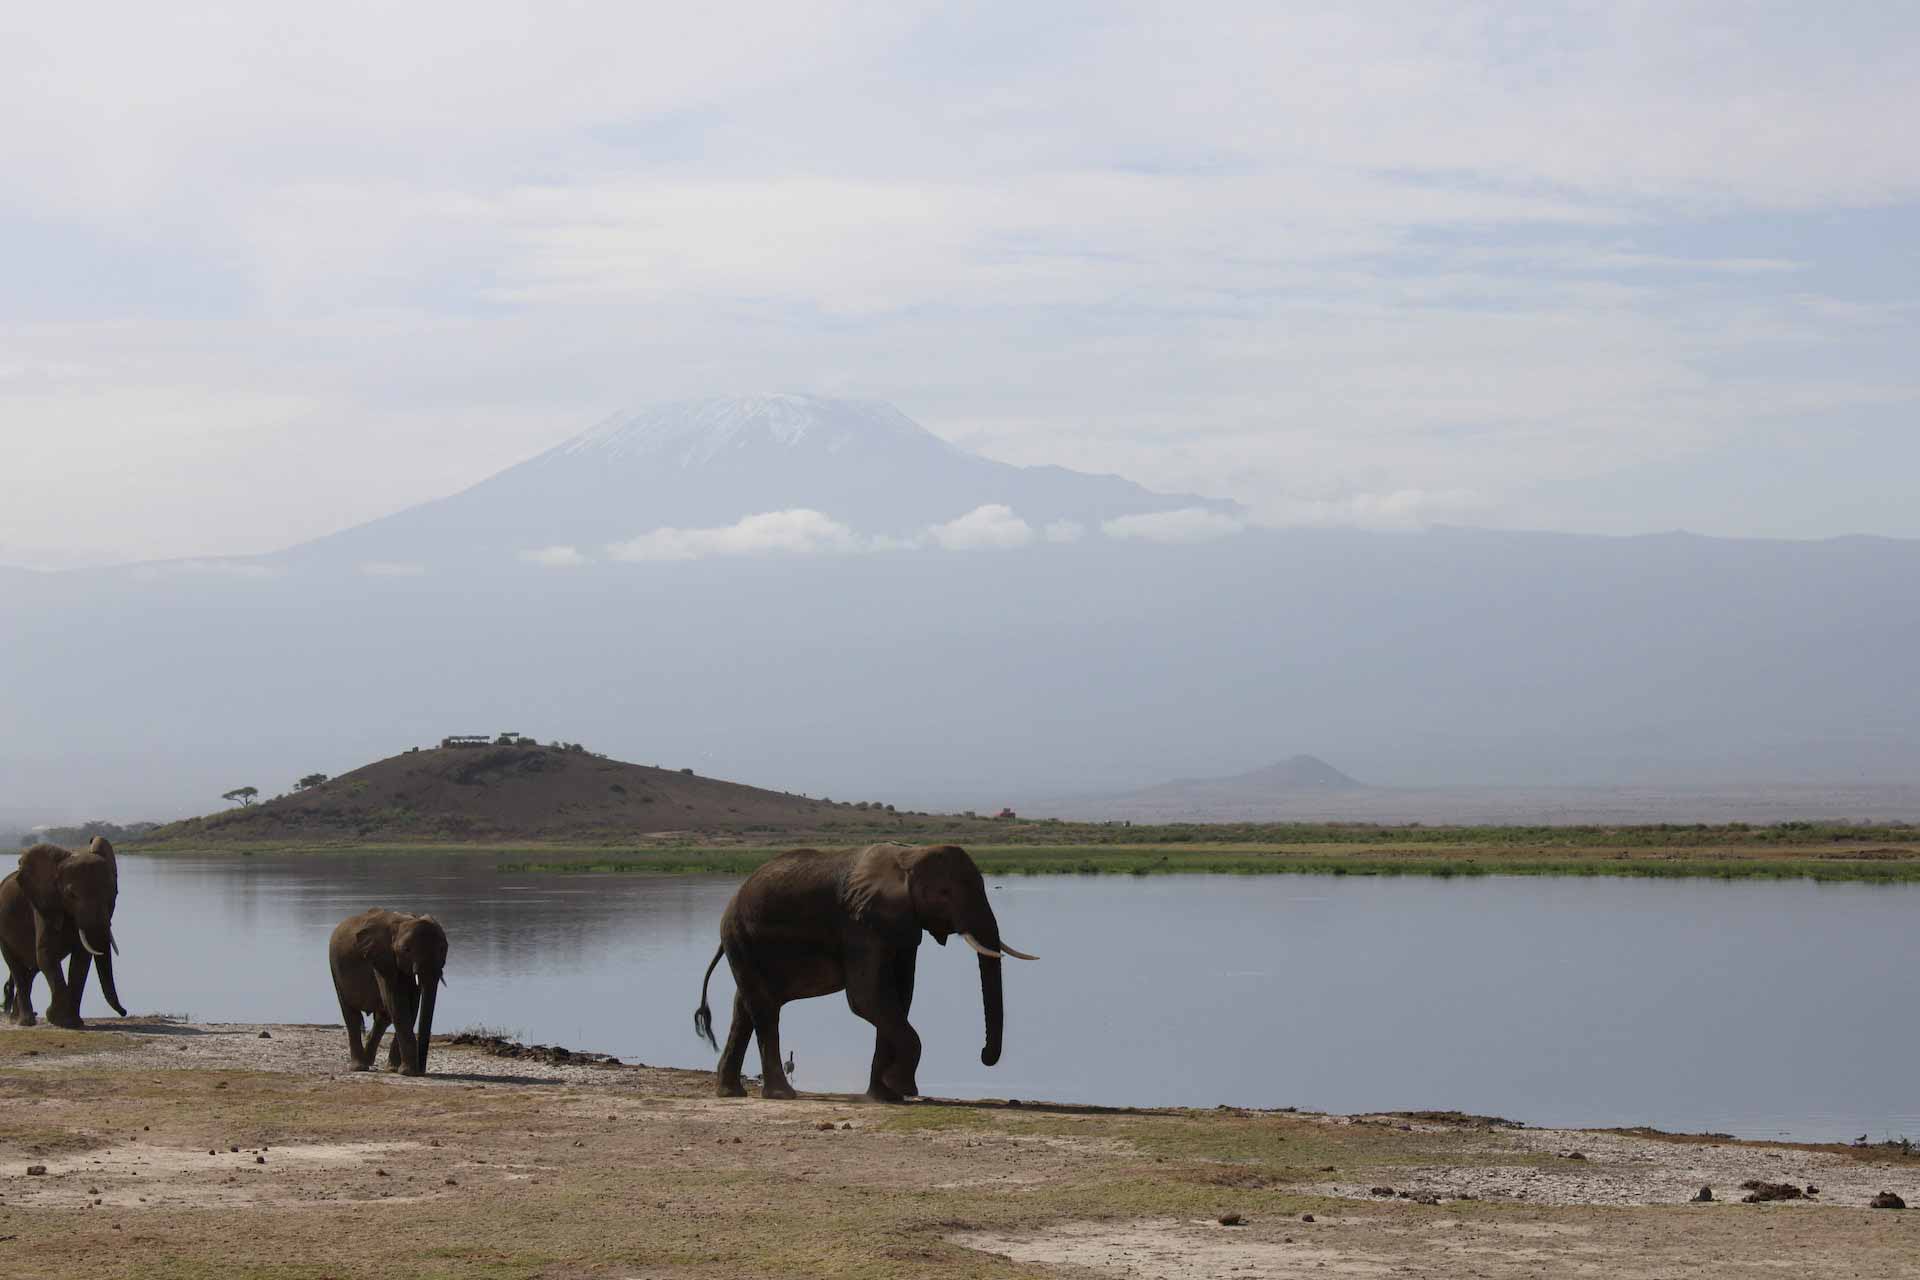 a herd of elephants walking along a body of water